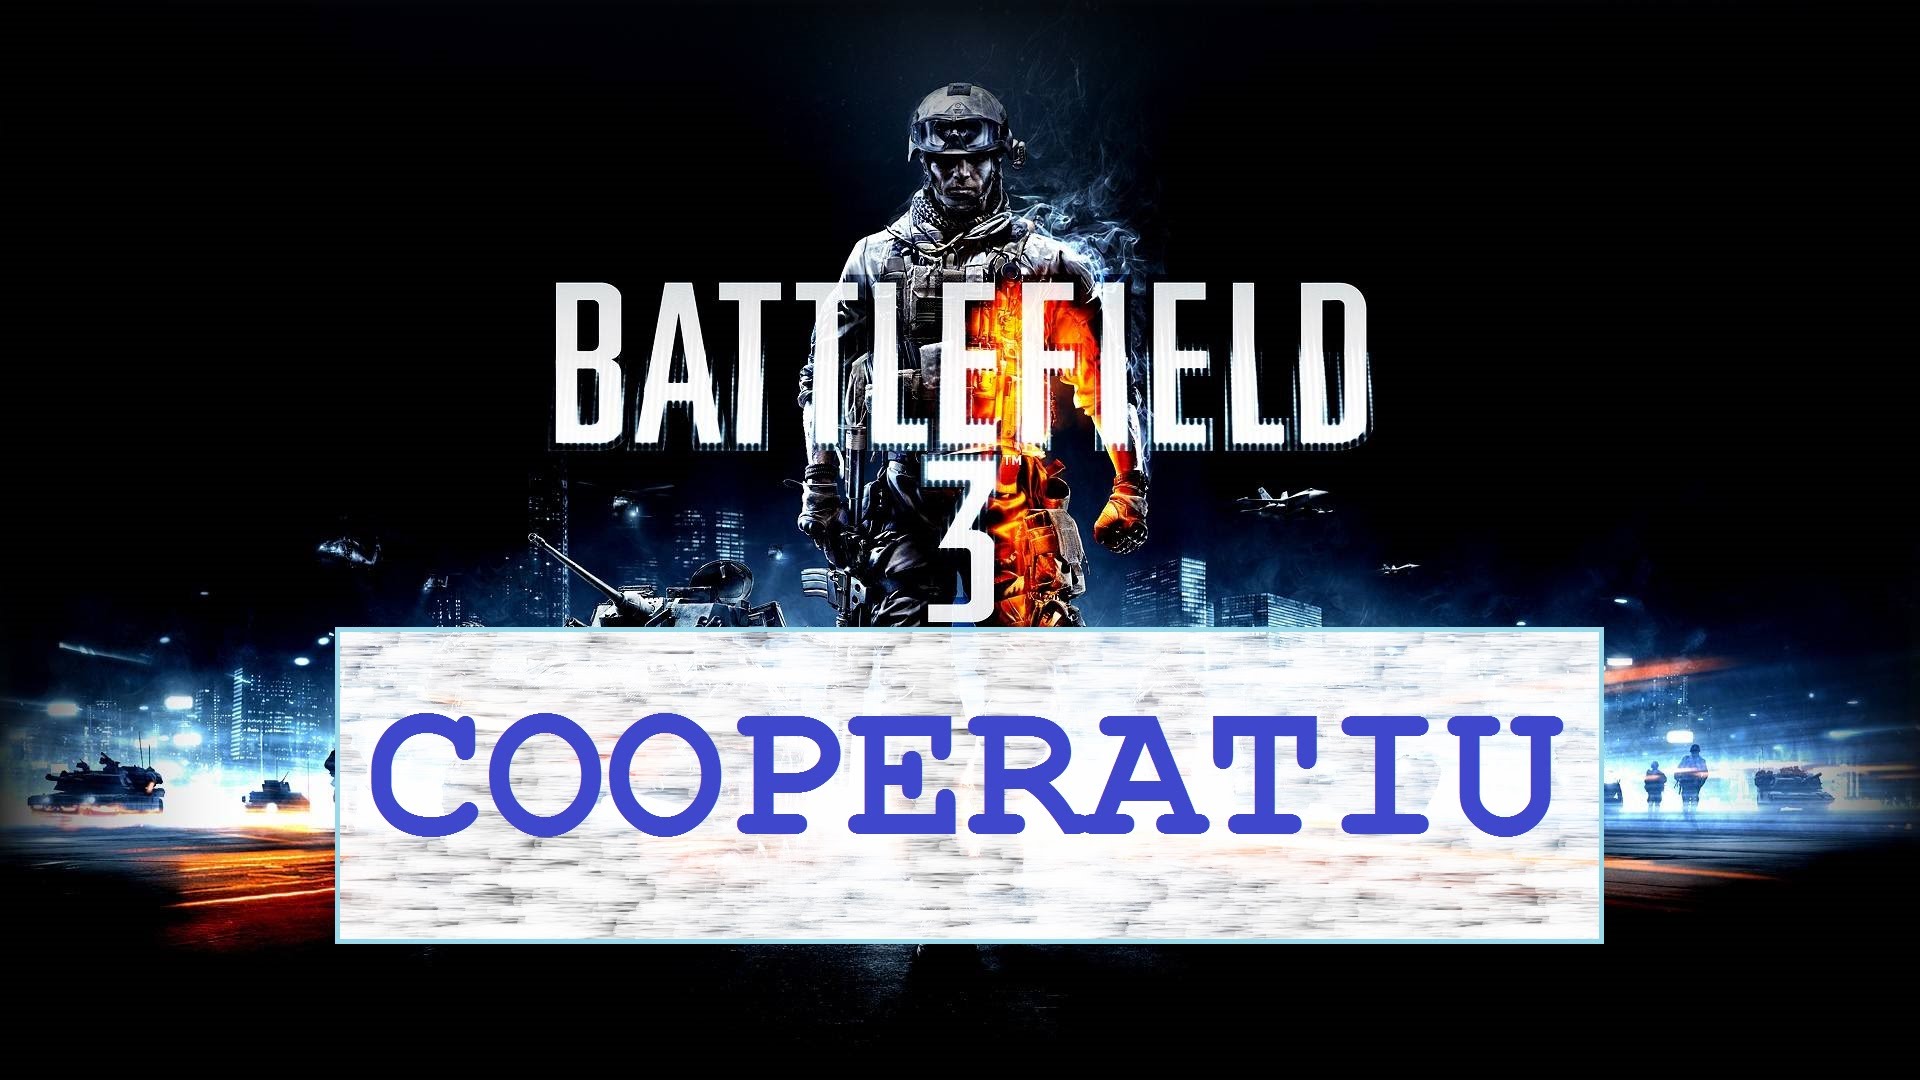 Battlefield 3 - Cooperatiu - 3a Missió de Xavi Mates